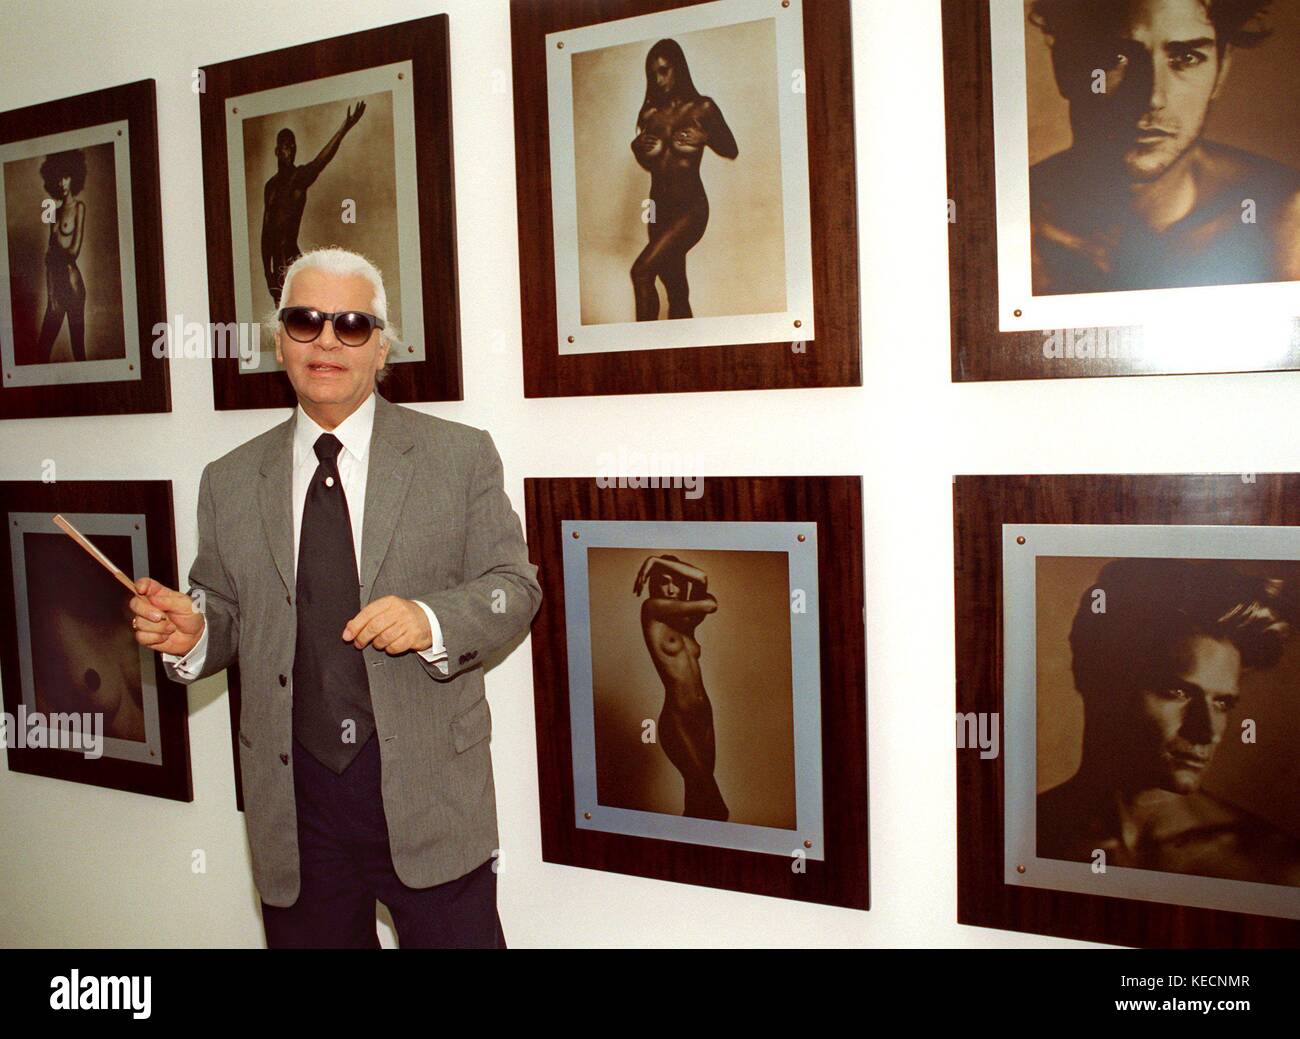 Diseñador de moda y fotógrafo alemán Karl Lagerfeld en la inauguración de  su exposición "parti pris" (opinión preconcebida) arte El Museo de Arte de  Bonn (North Rhine Westphalia, Alemania) el 9 de